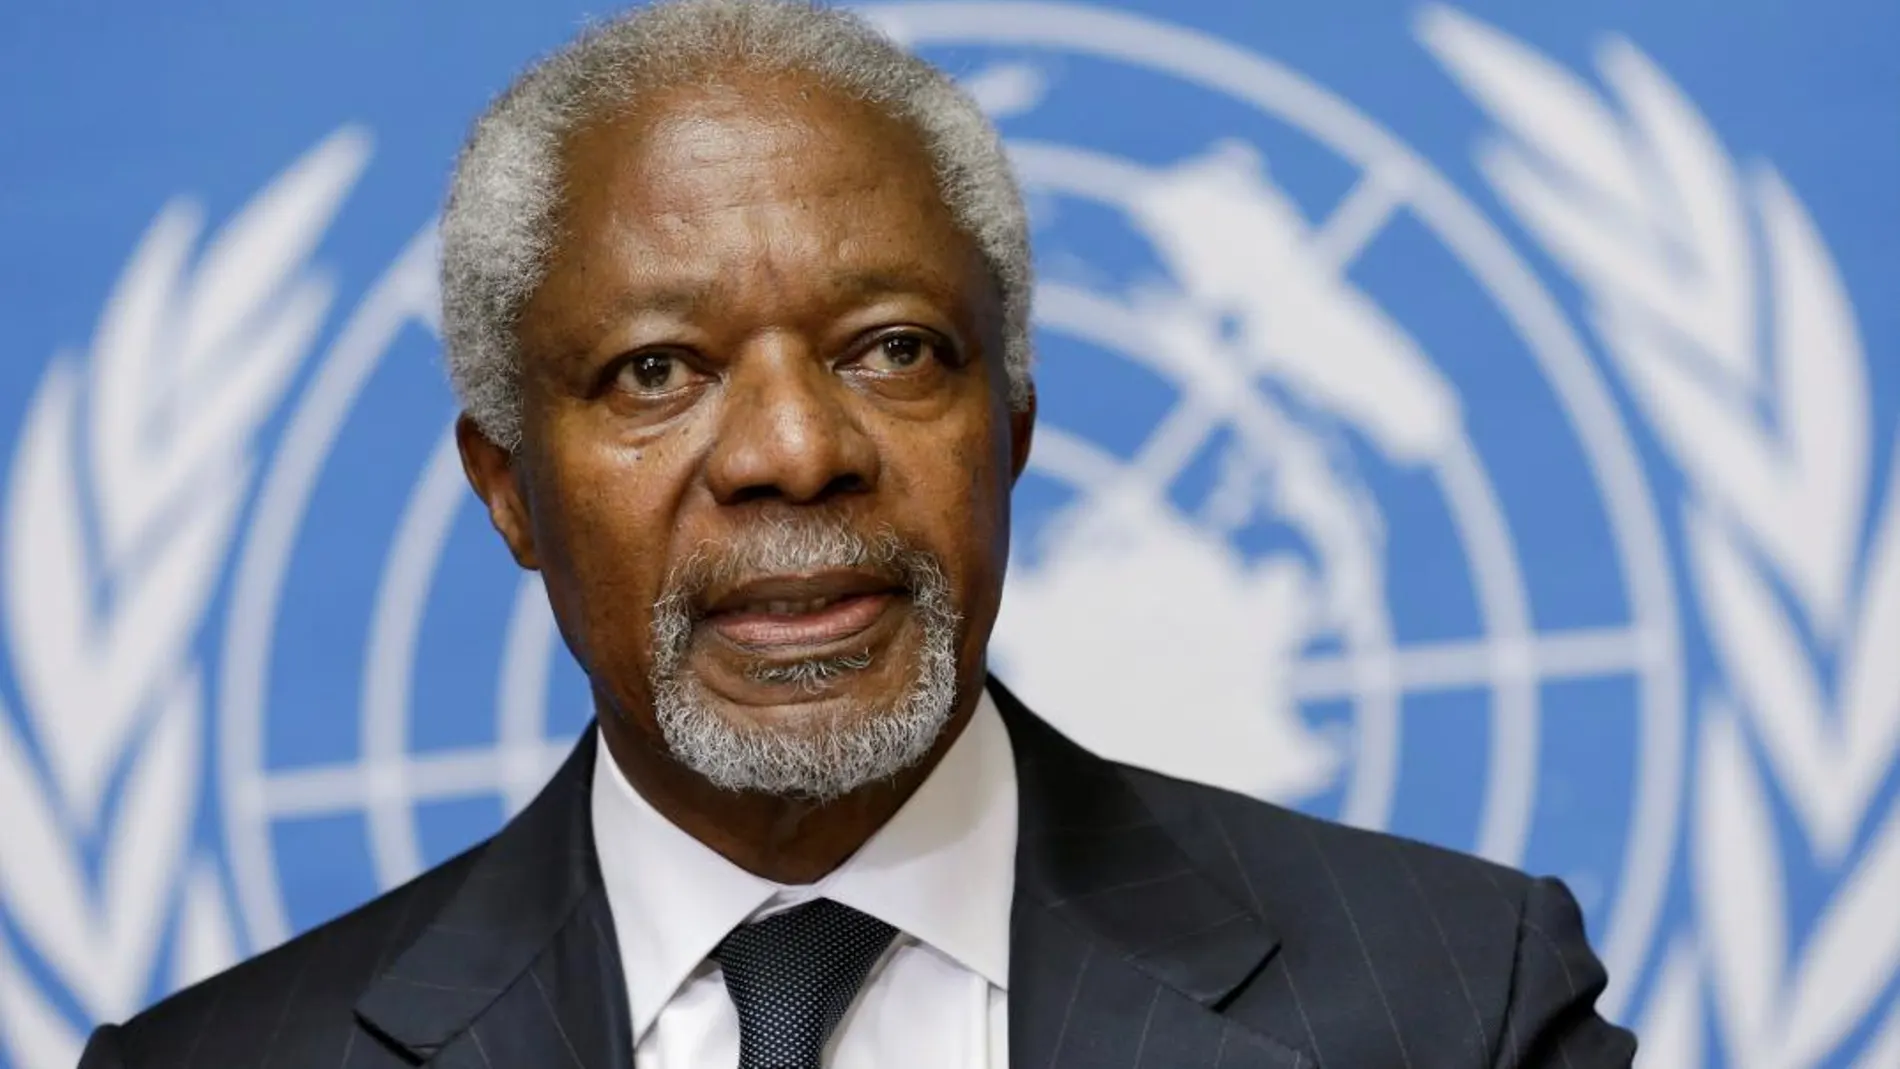 Kofi Annan durante su etapa al frente de la ONU